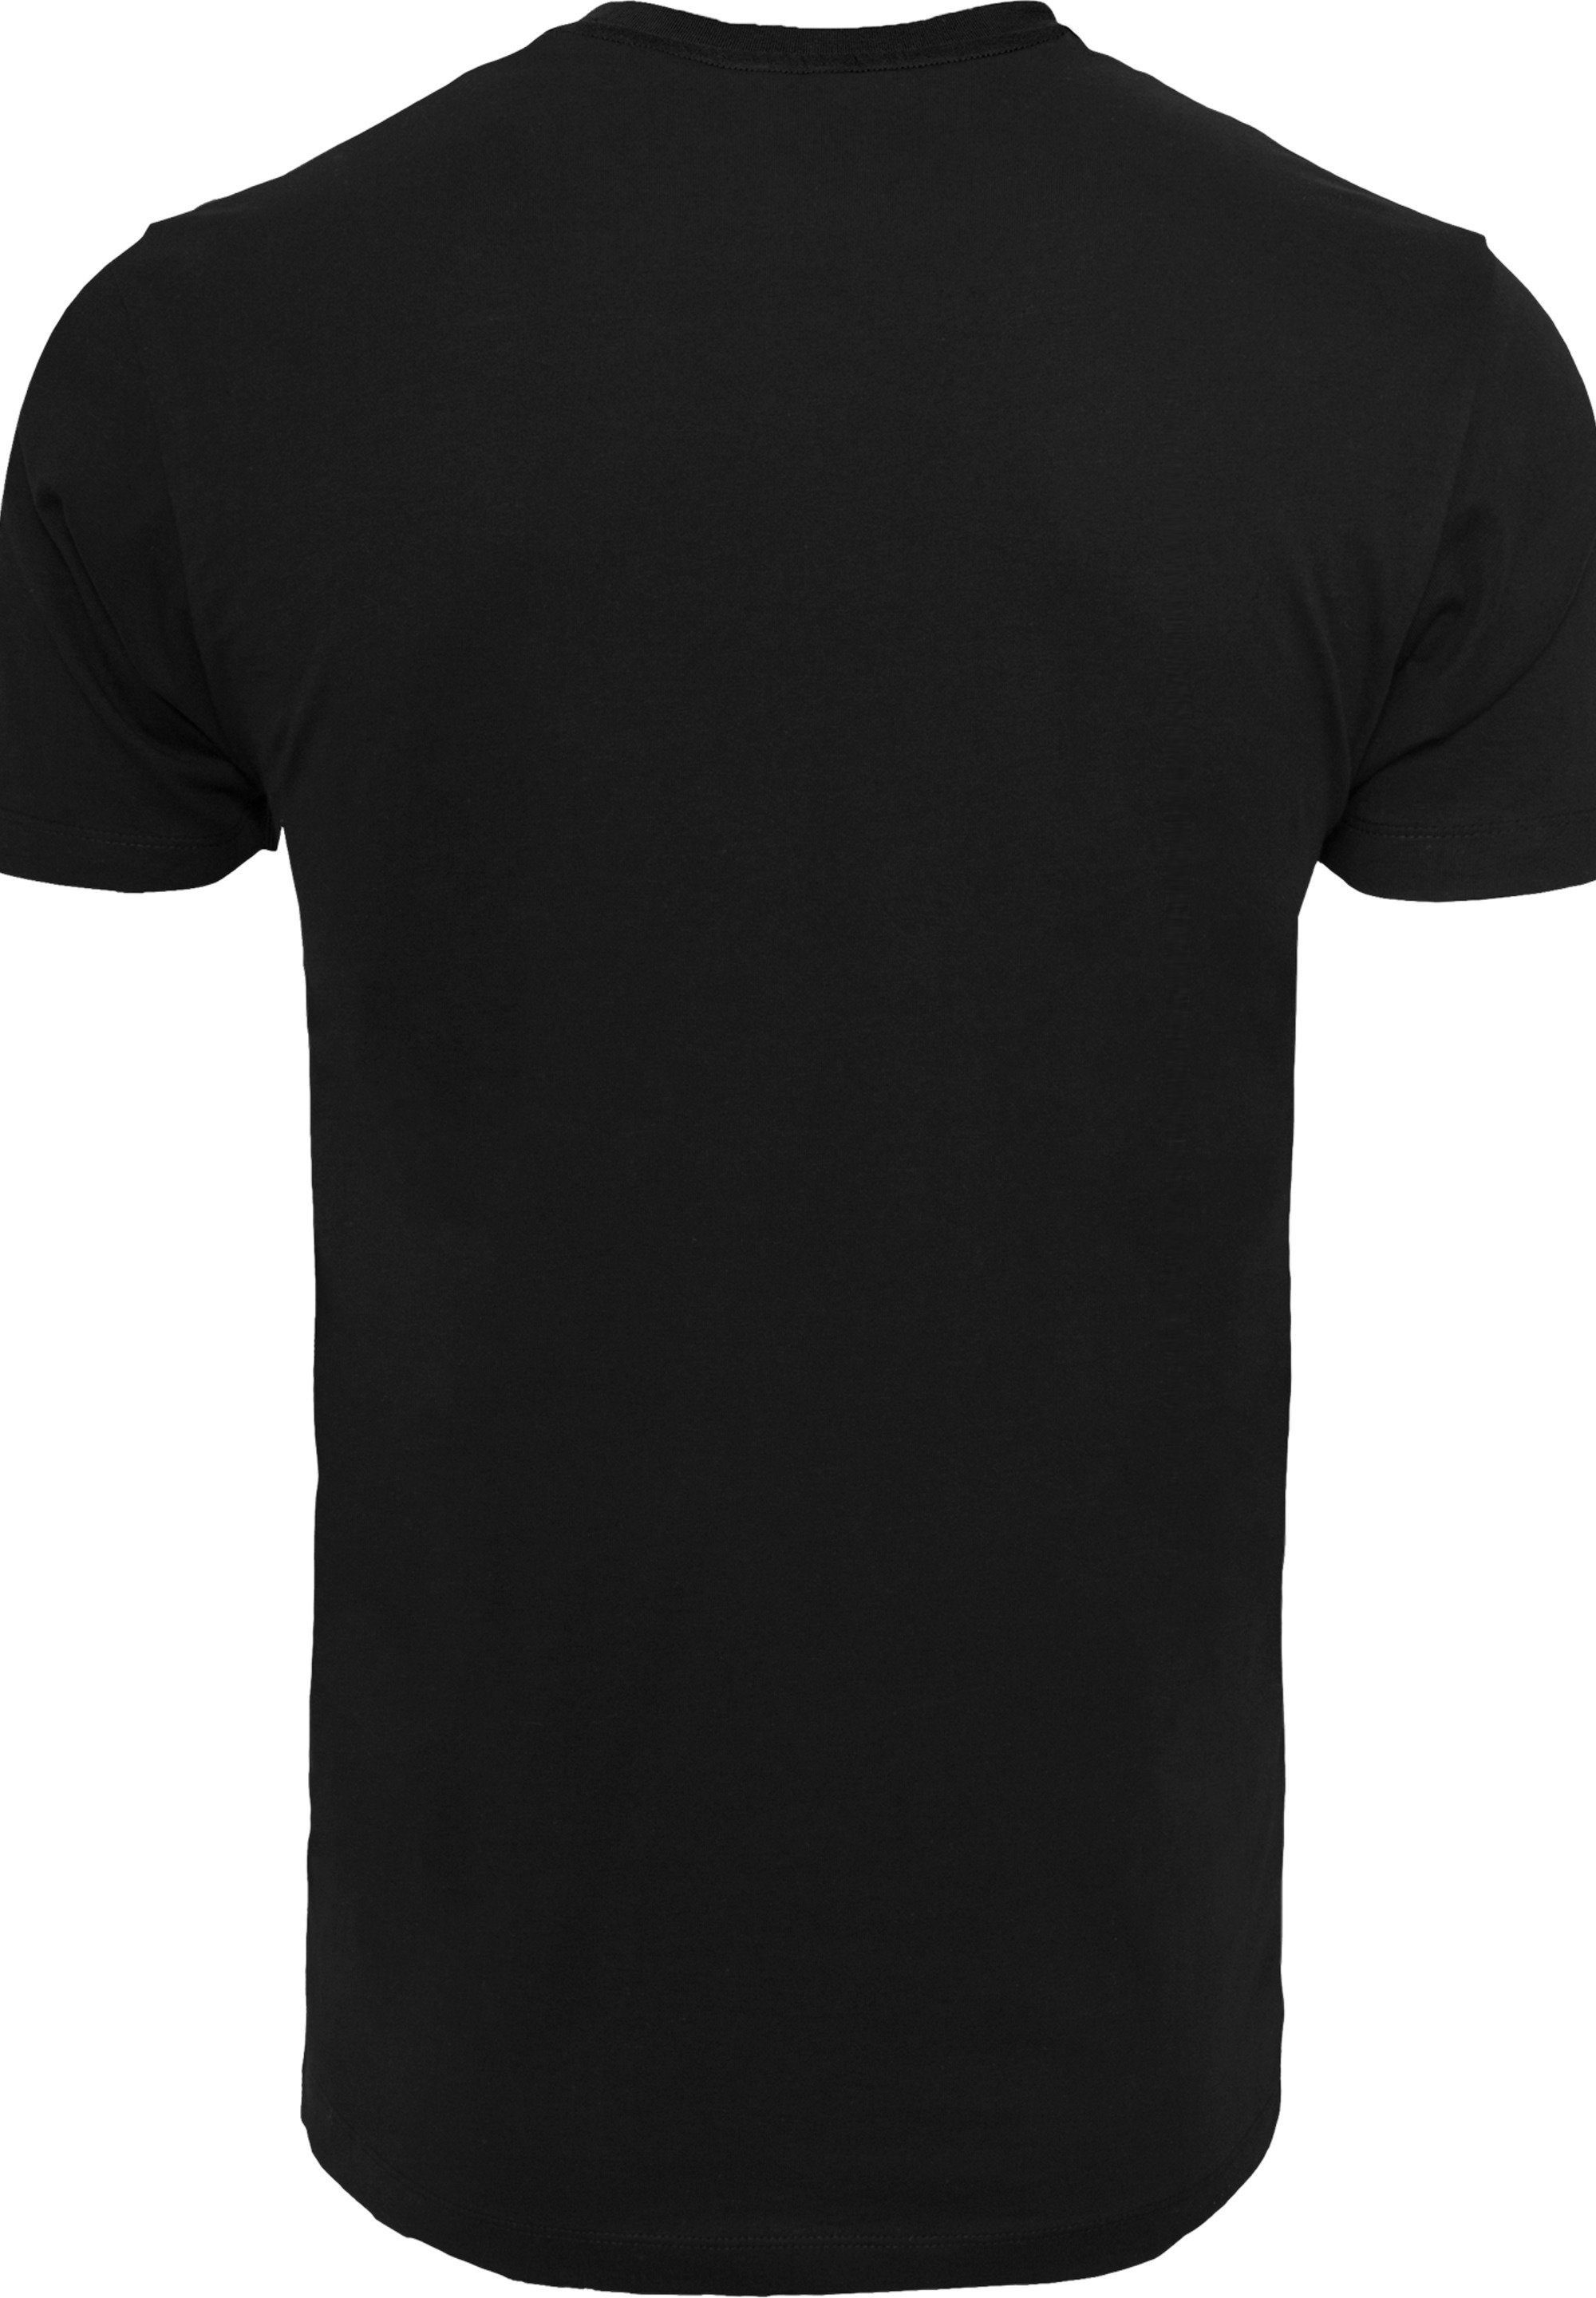 Die Merch,Regular-Fit,Basic,Bedruckt Distressed Feuerstein Familie T-Shirt Group Herren,Premium F4NT4STIC